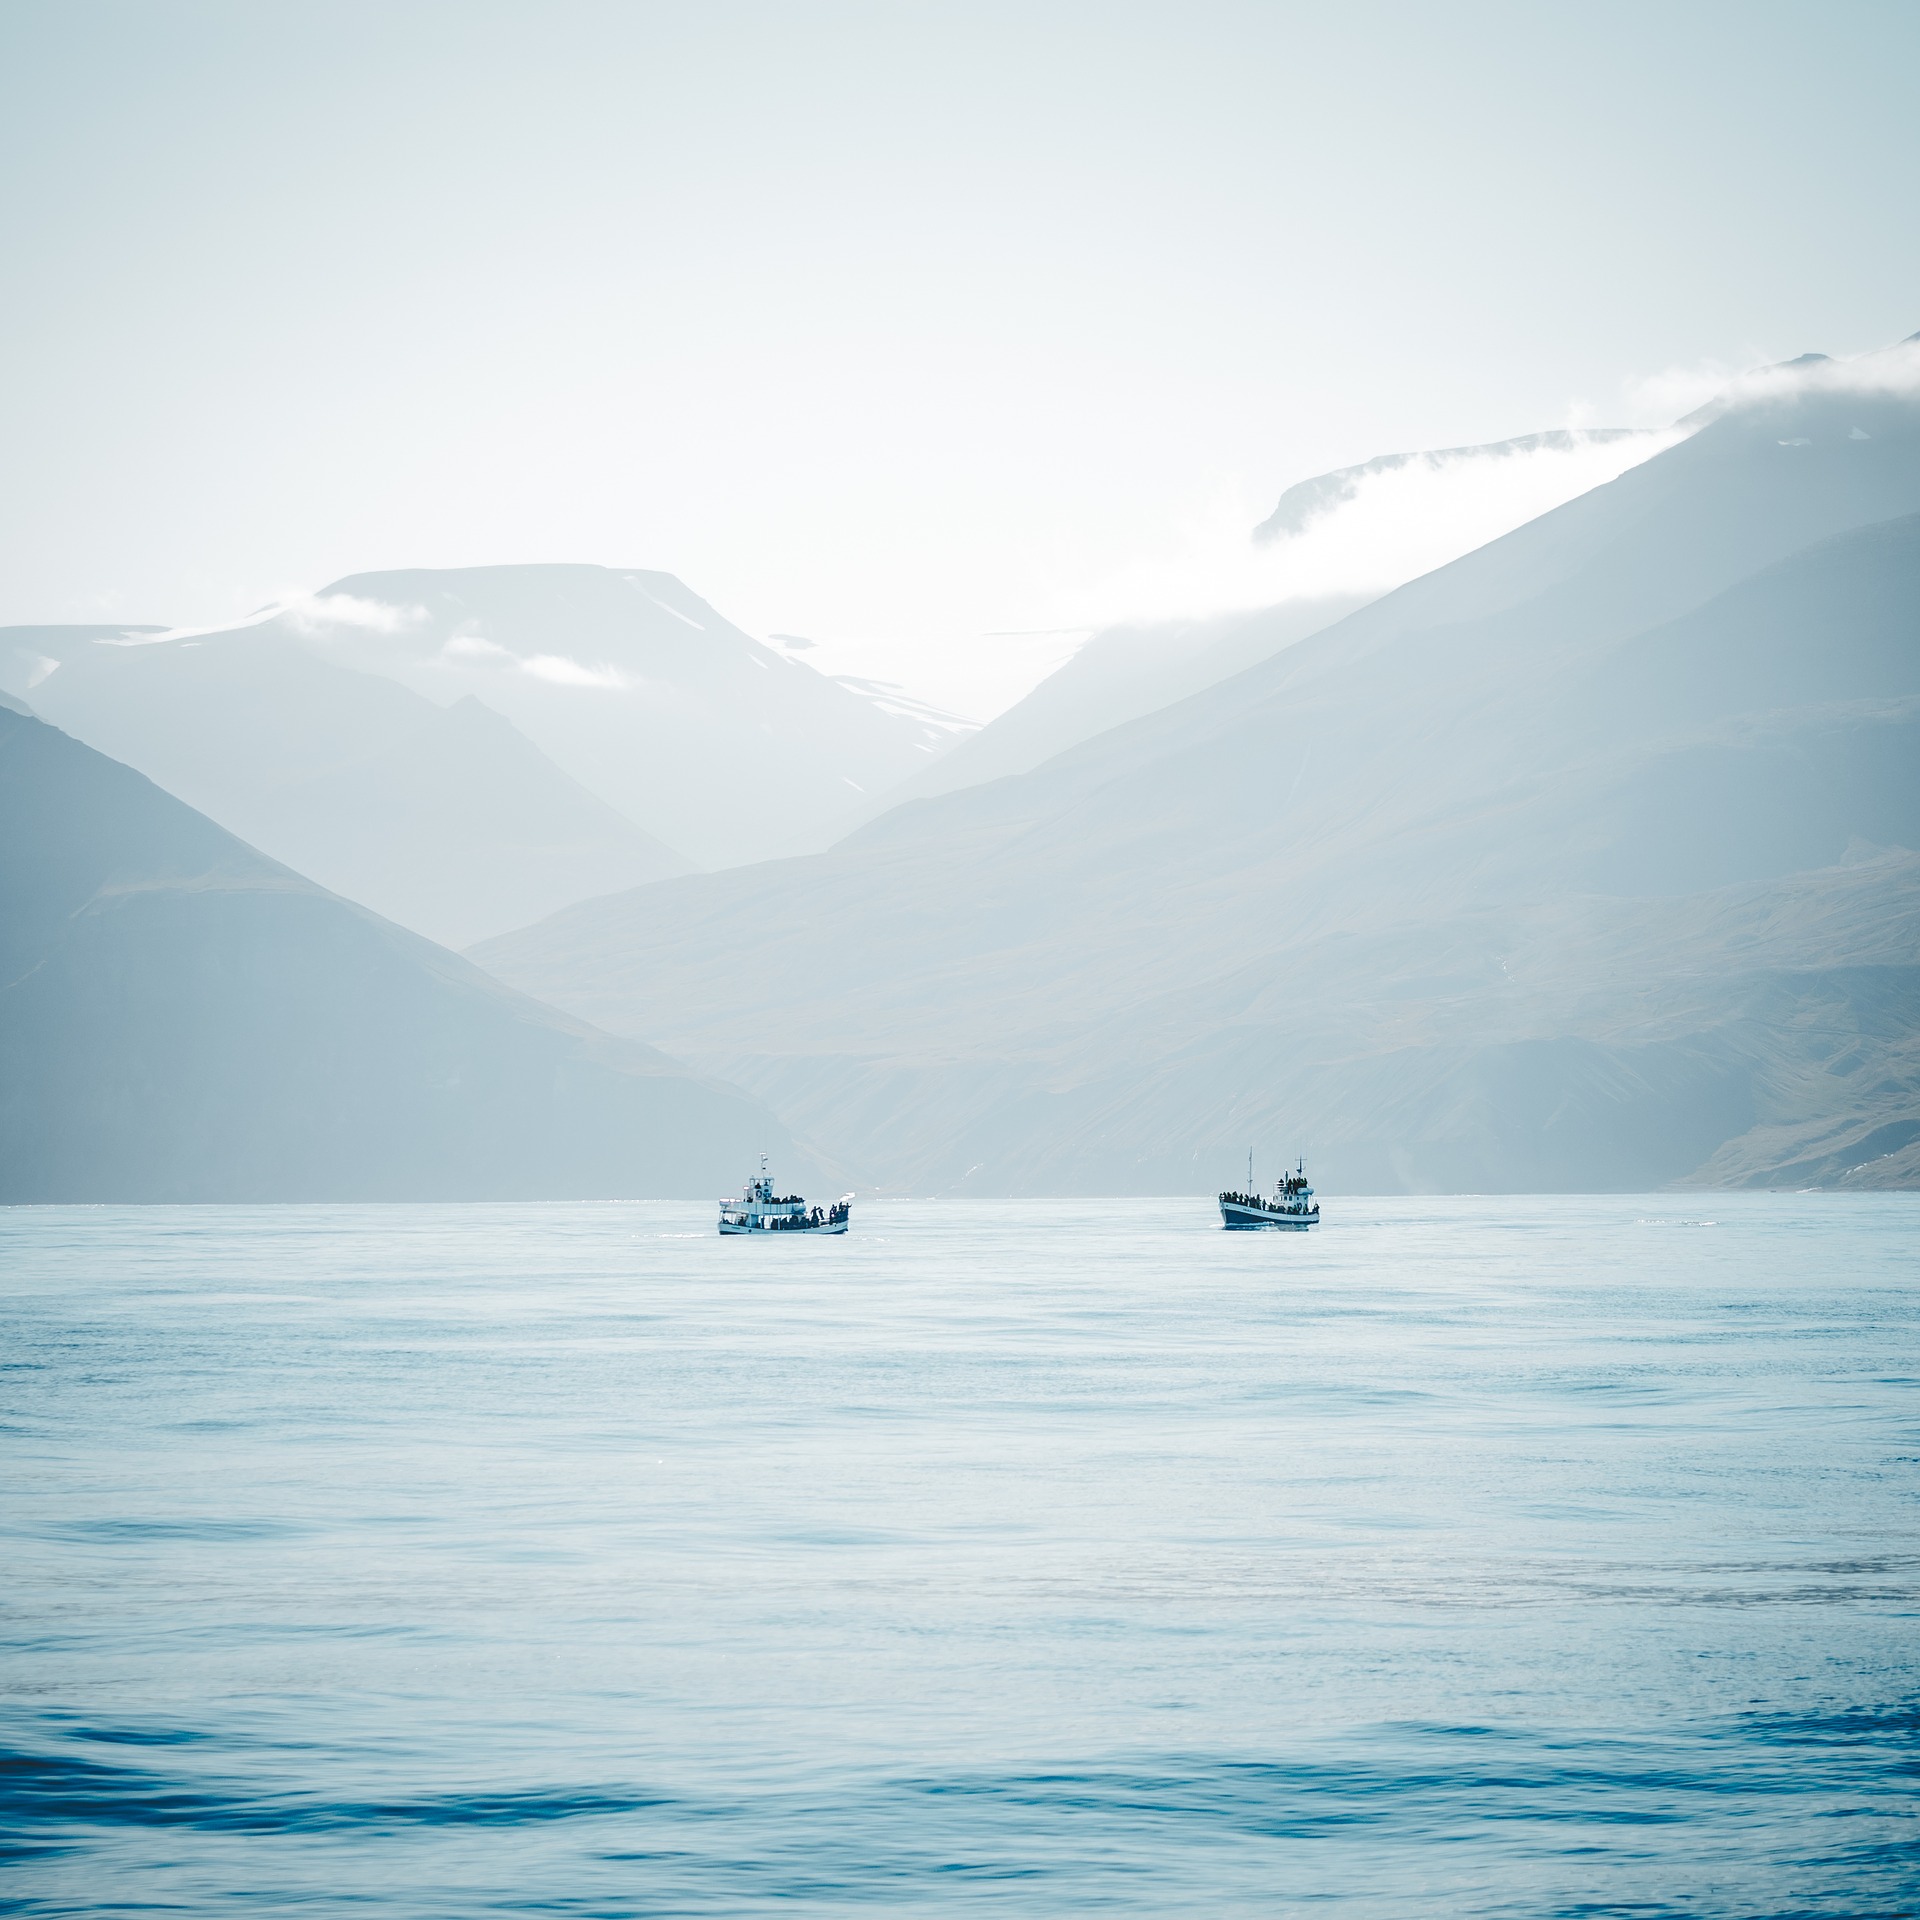 Арктика сегодня: рыболовство и арктический туризм 